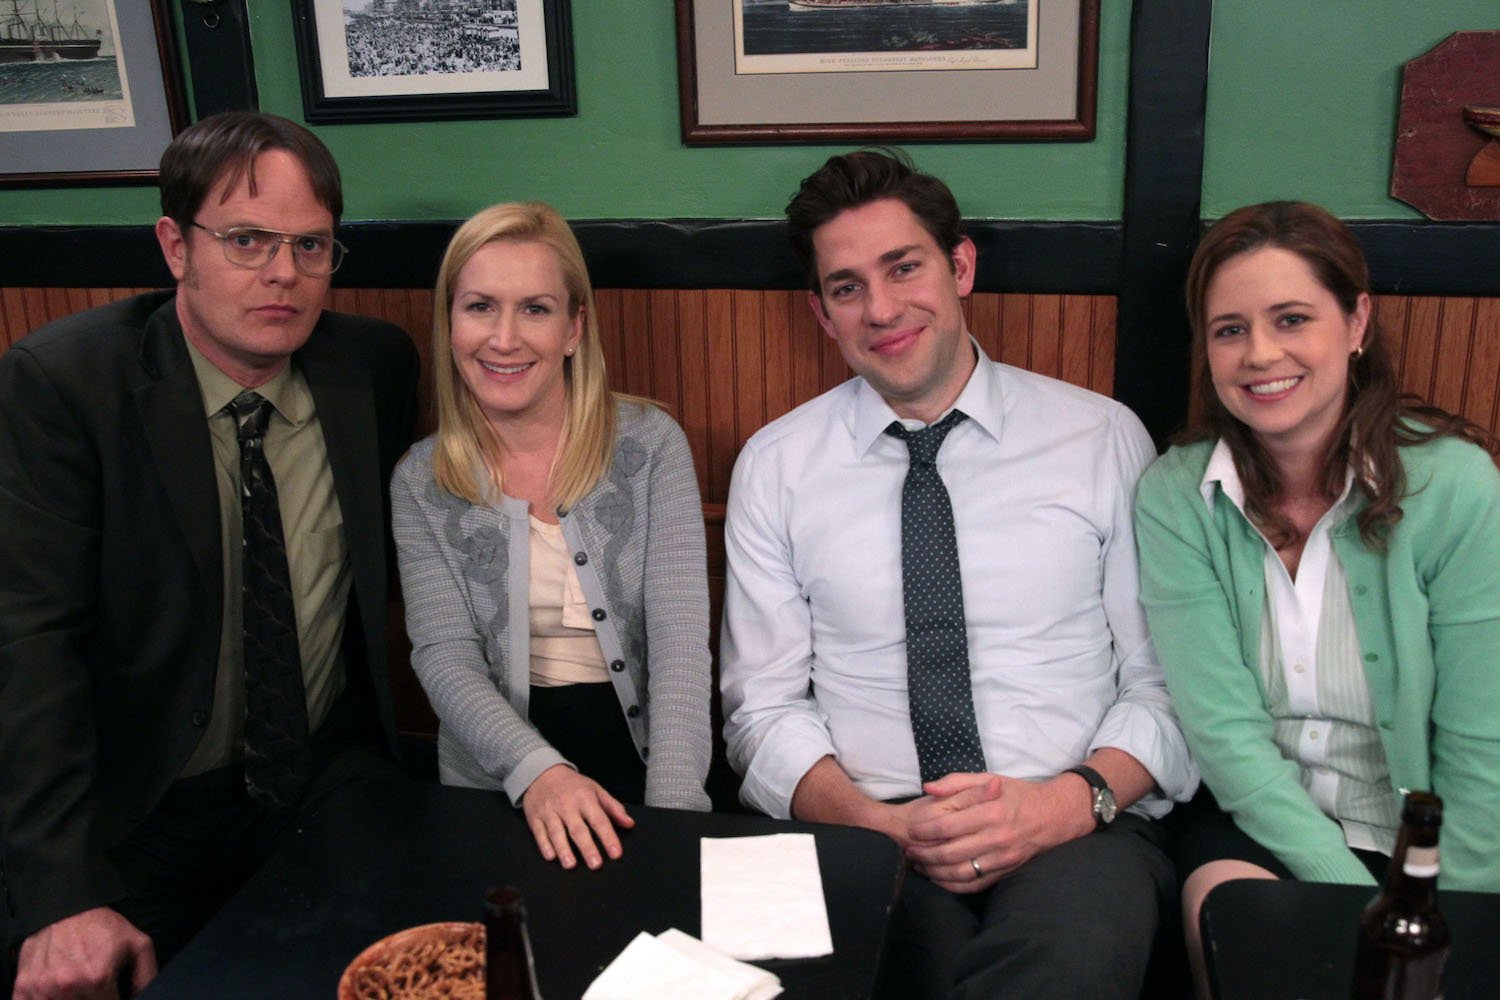 Rainn Wilson, Angela Kinsey, John Krasinski, and Jenna Fischer on 'The Office'